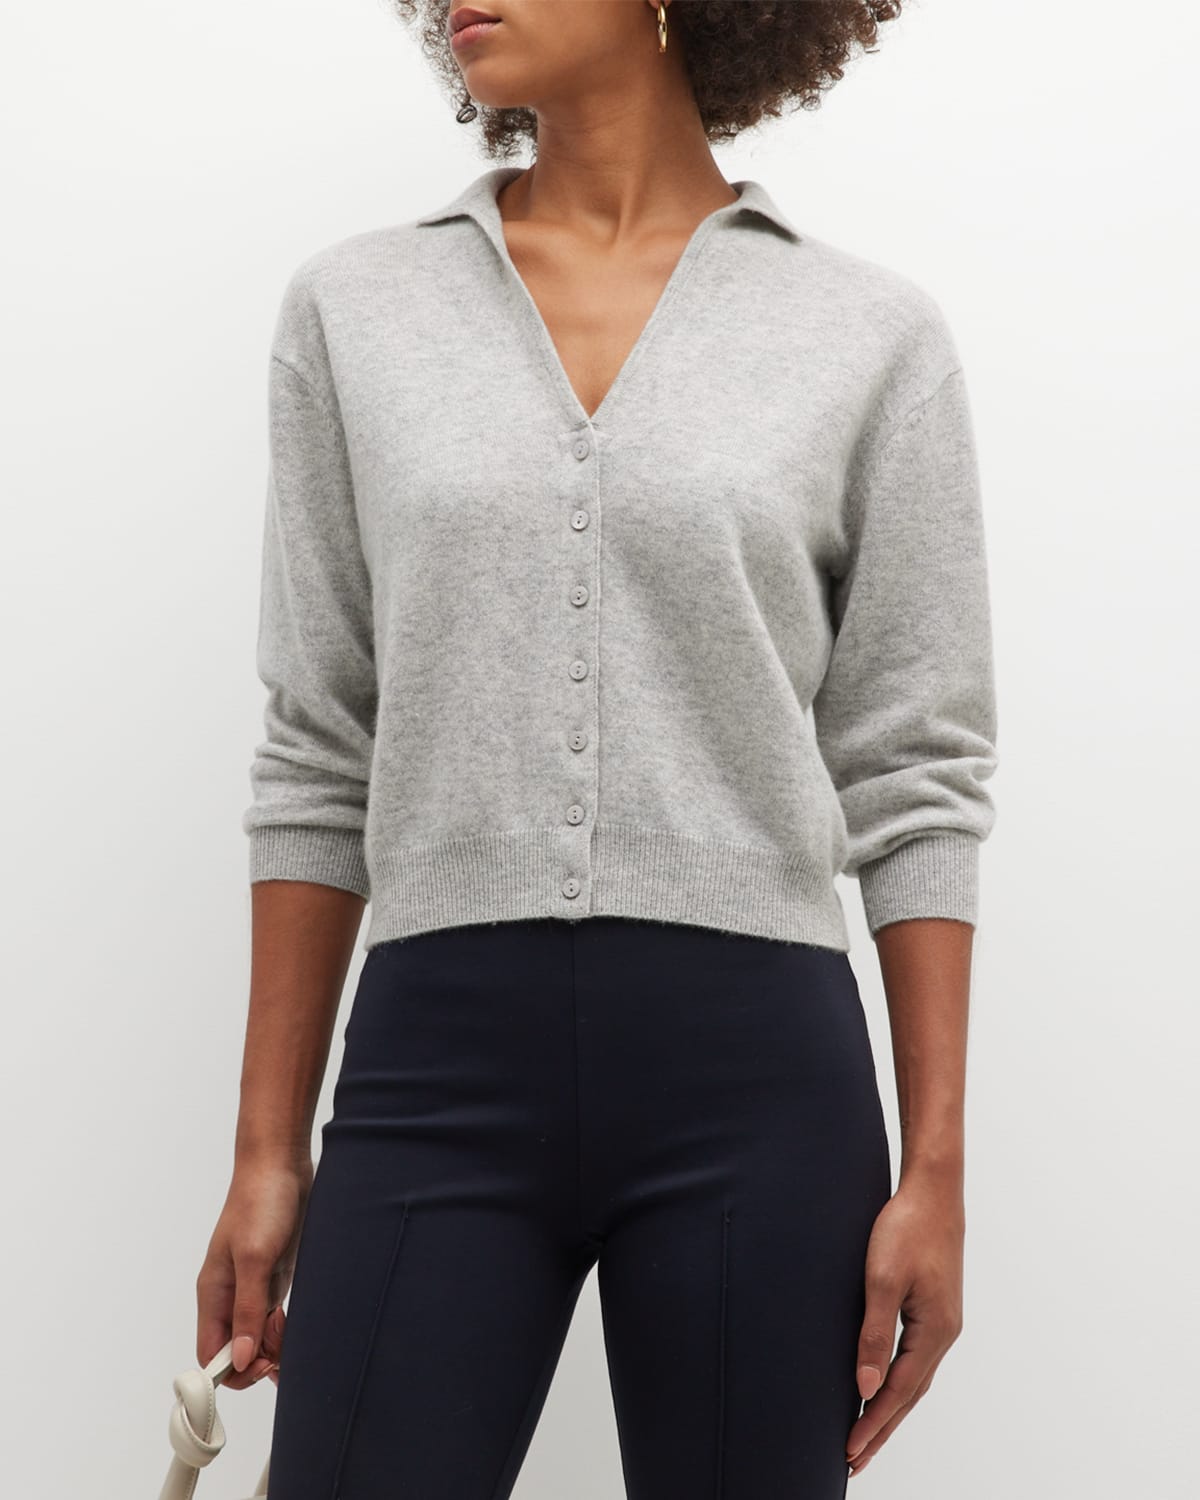 Grey/Ven Lauren Cardigan Sweater